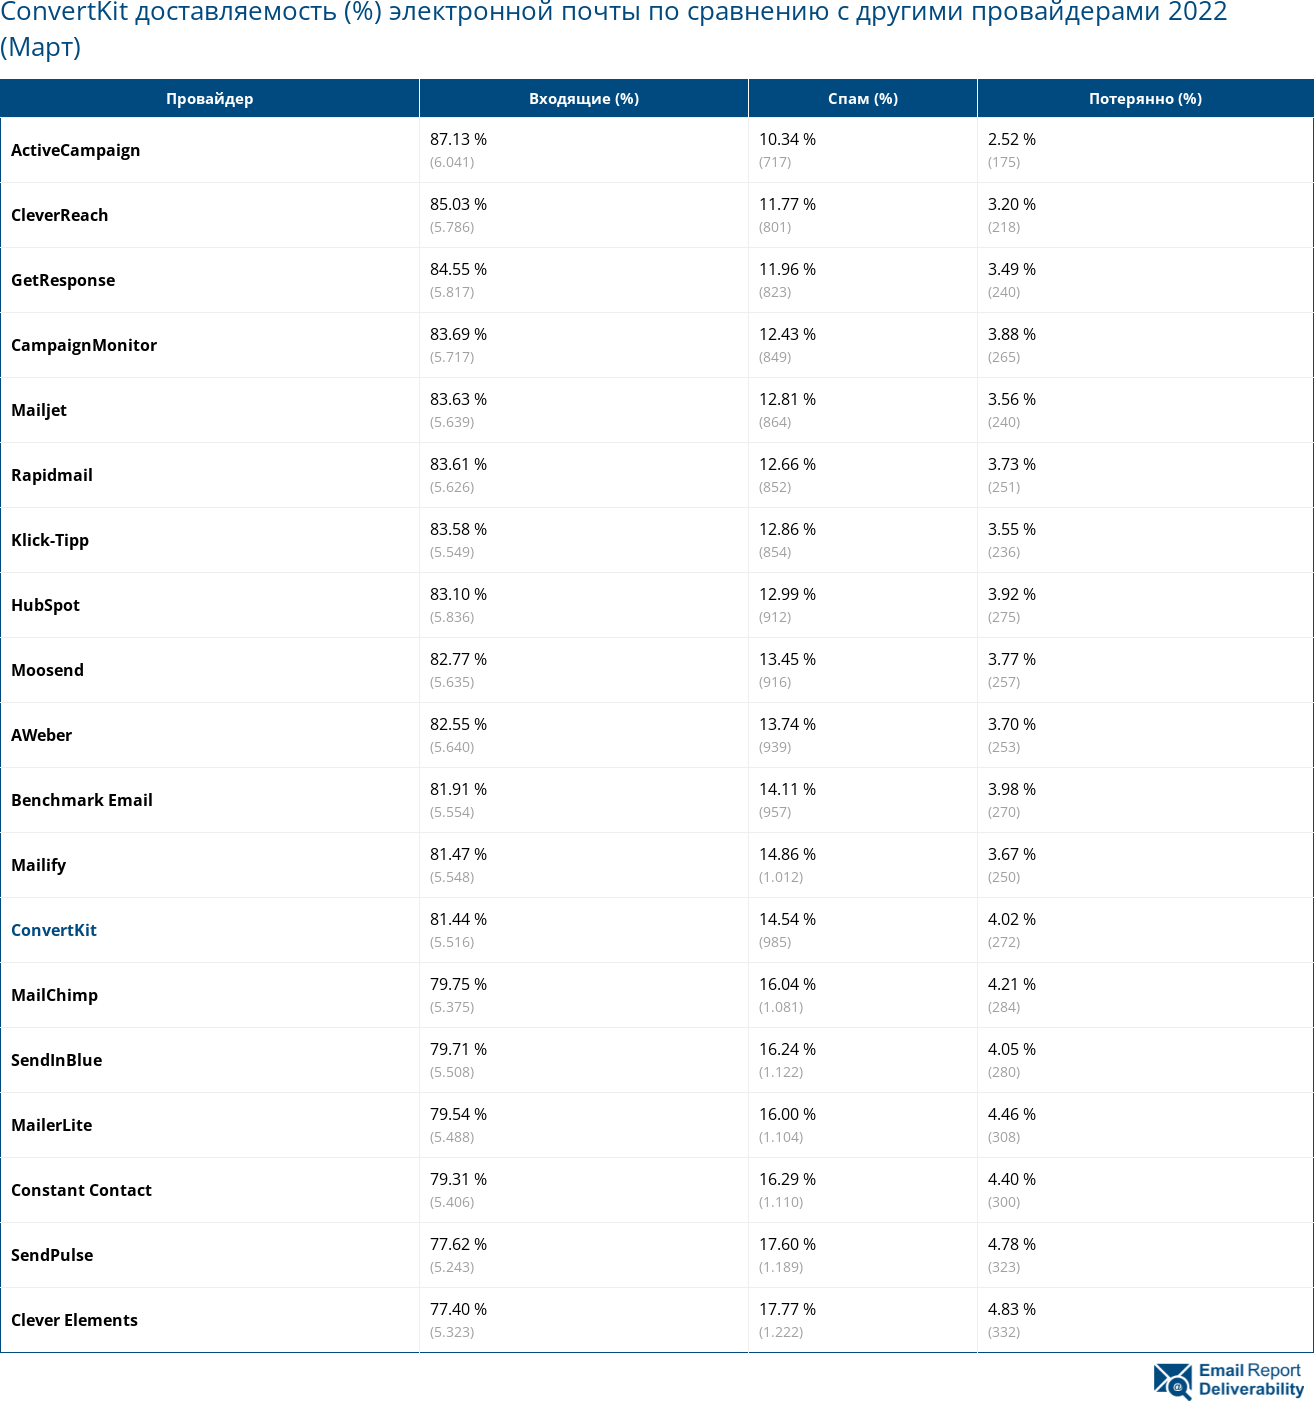 ConvertKit доставляемость (%) электронной почты по сравнению с другими провайдерами 2022 (Март)